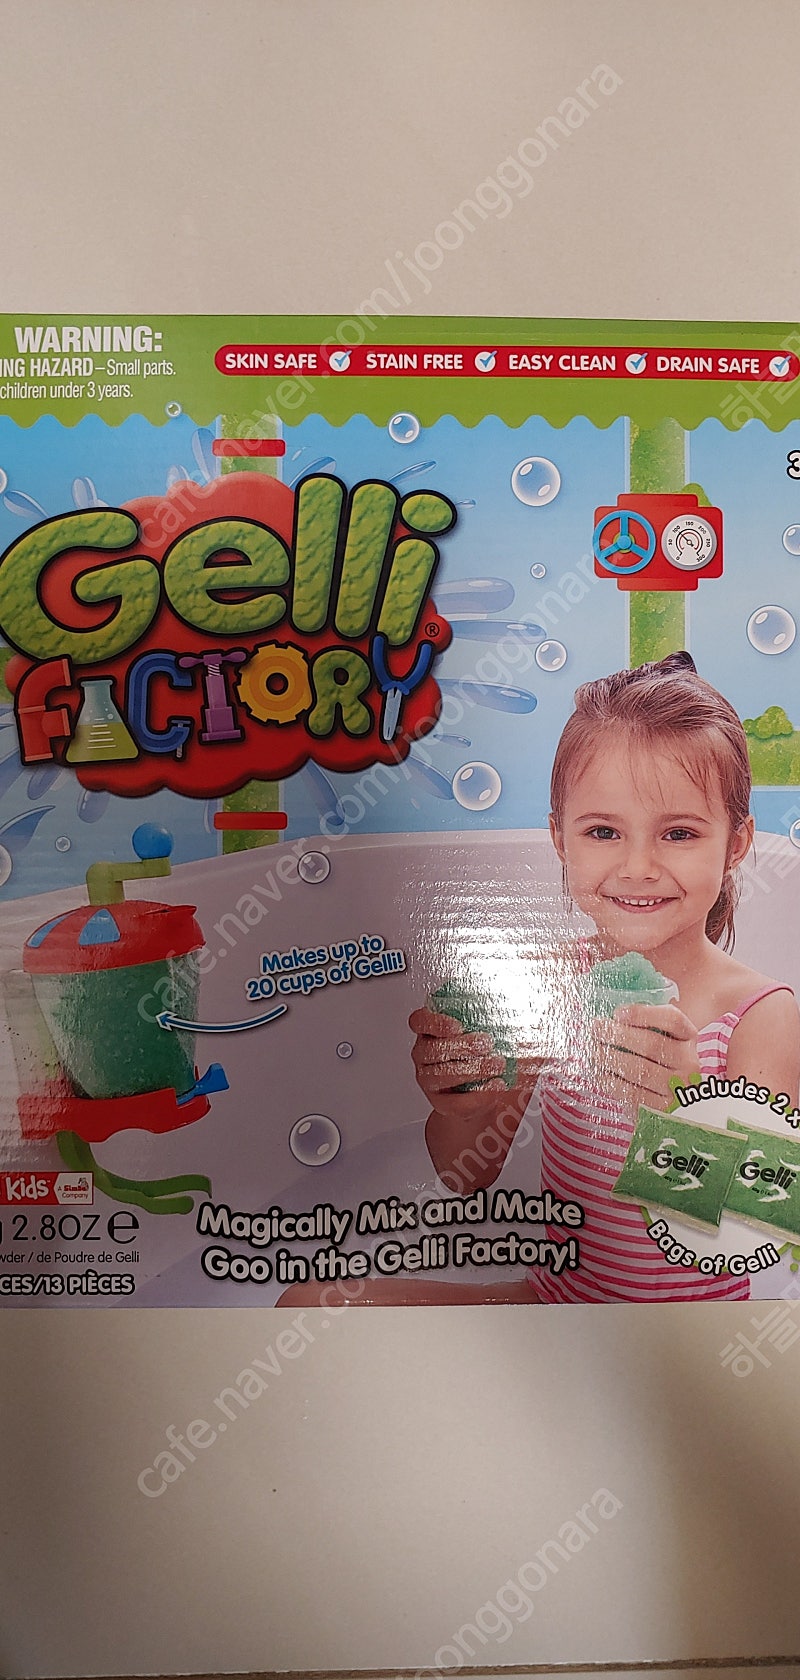 짐플리키즈 유아 목욕놀이 장난감 젤리팩토리 (새상품)